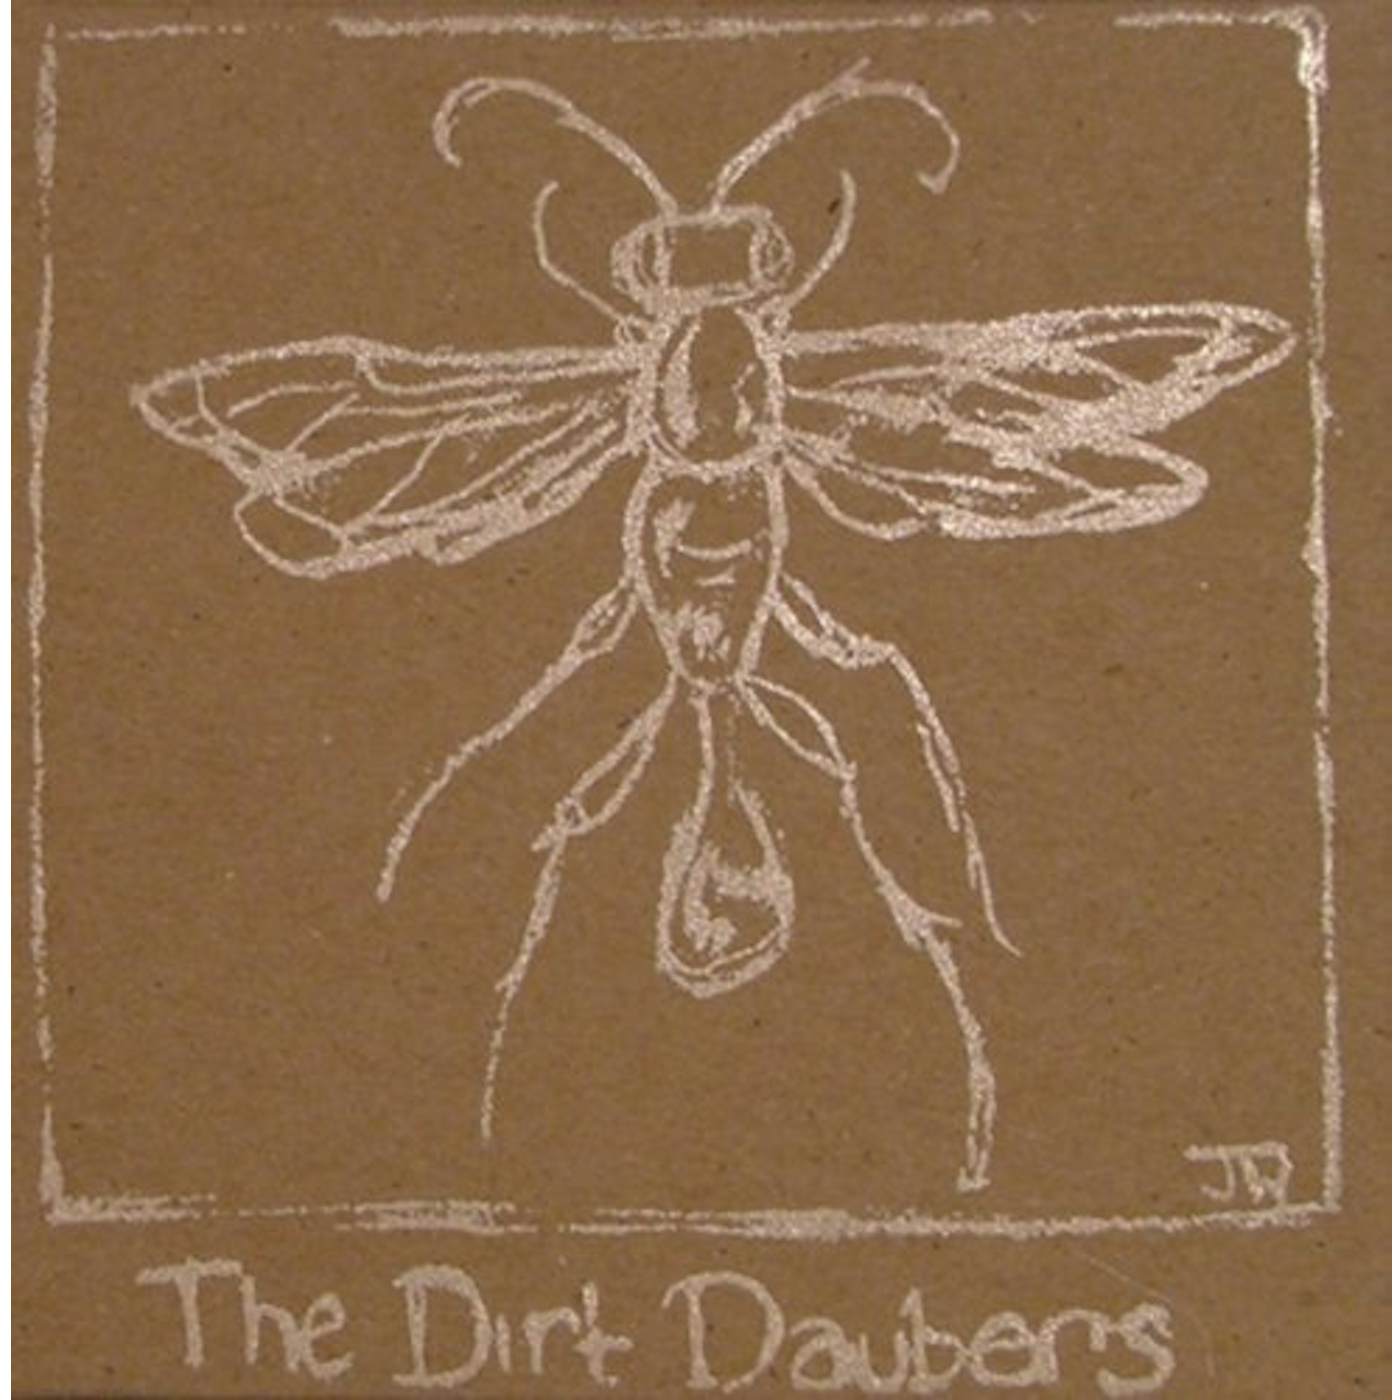 The Dirt Daubers CD